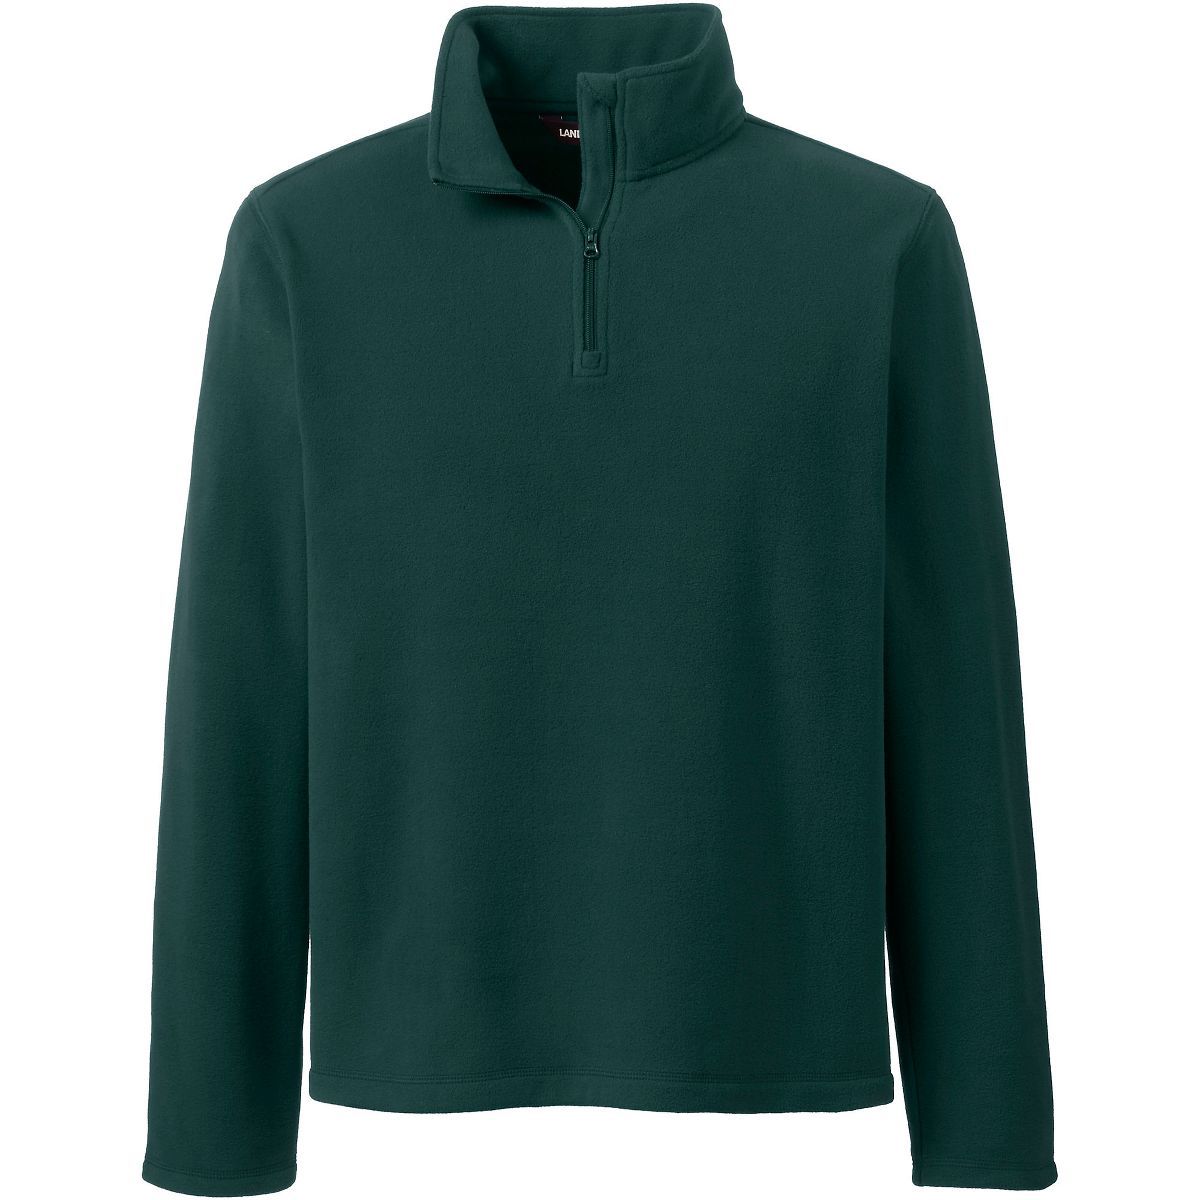 School Uniform Young Men's Lightweight Fleece Quarter Zip Pullover | Target